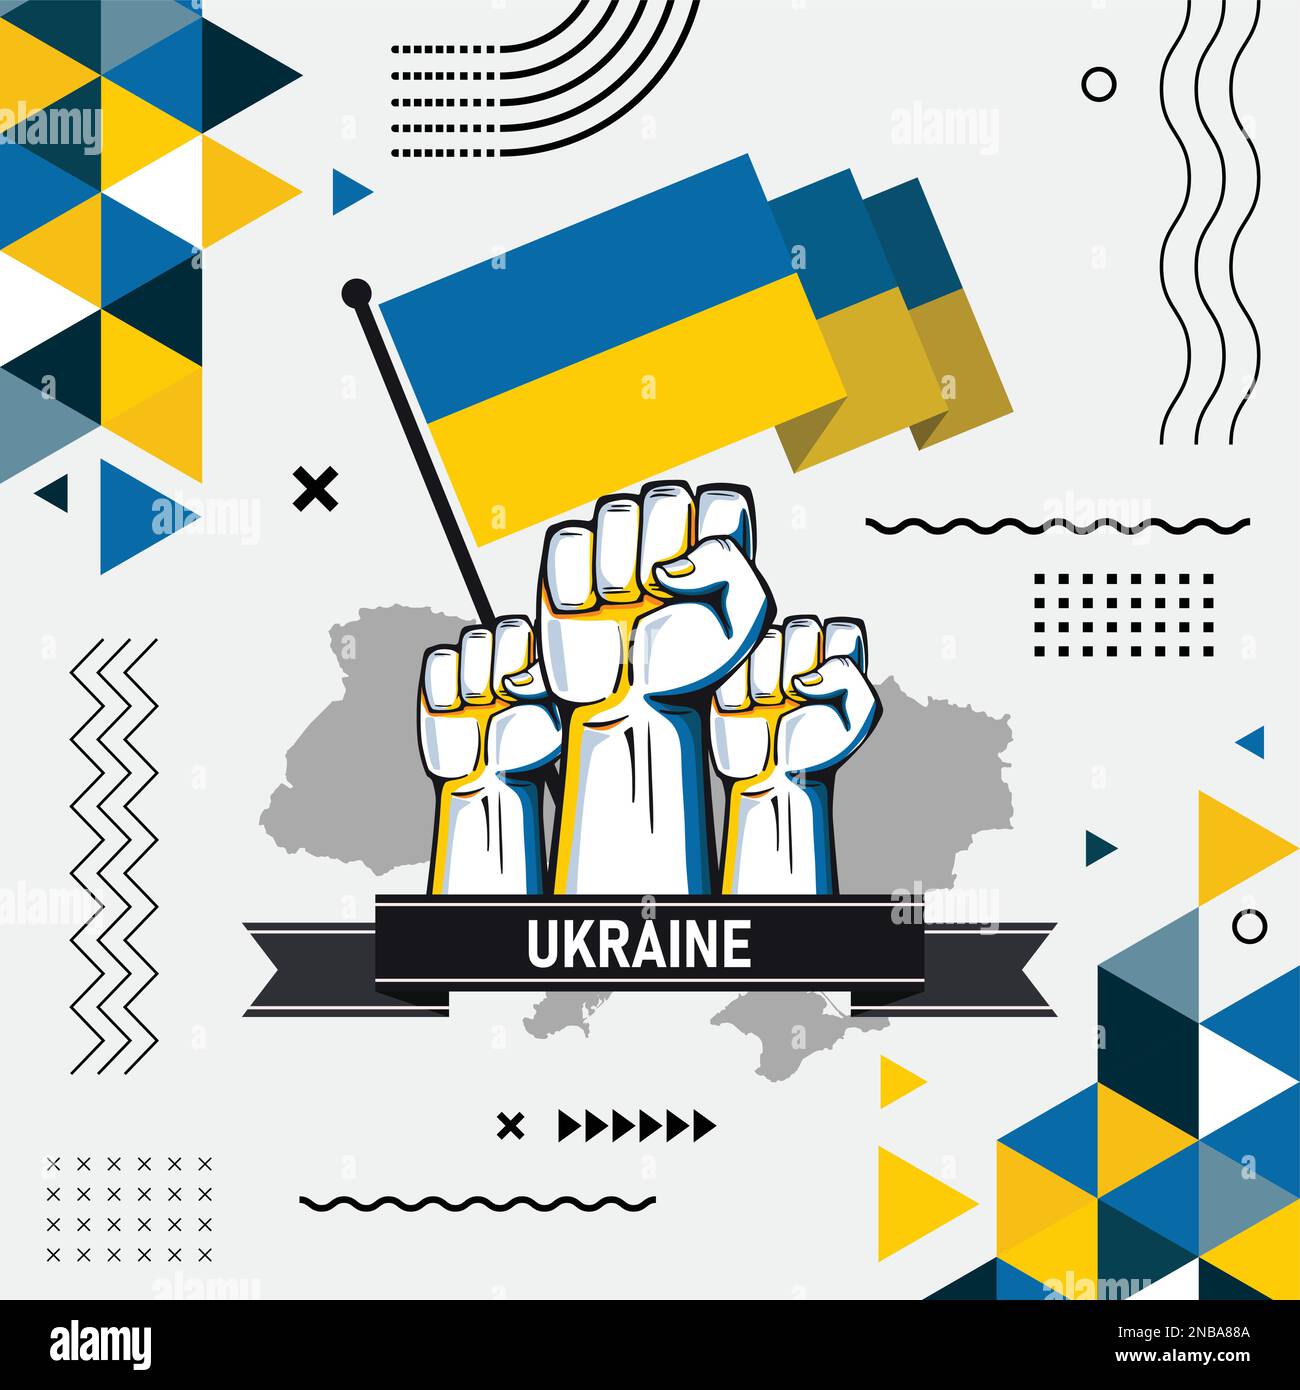 Ukrainisches Banner für den Nationalfeiertag, abstraktes modernes Design. Ukrainische Flaggenkarte, blaues gelbes Farbschema. Krieg mit erhobenen Fäusten, kultureller Hintergrund. Vektor Stock Vektor